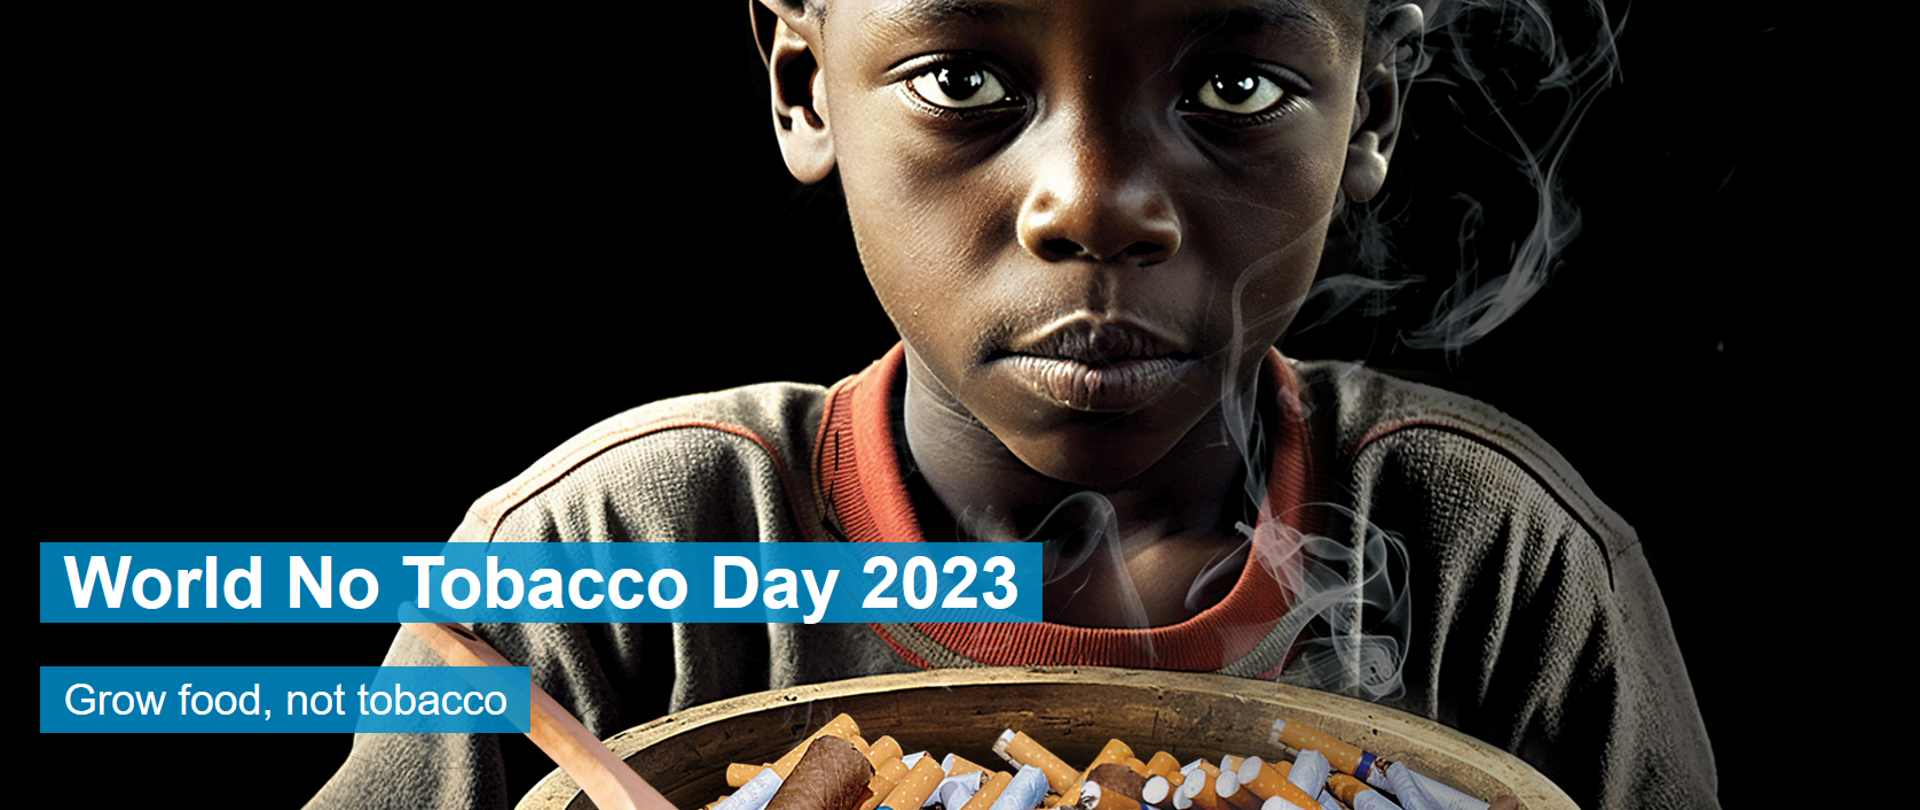 Światowy Dzień bez Tytoniu 2023